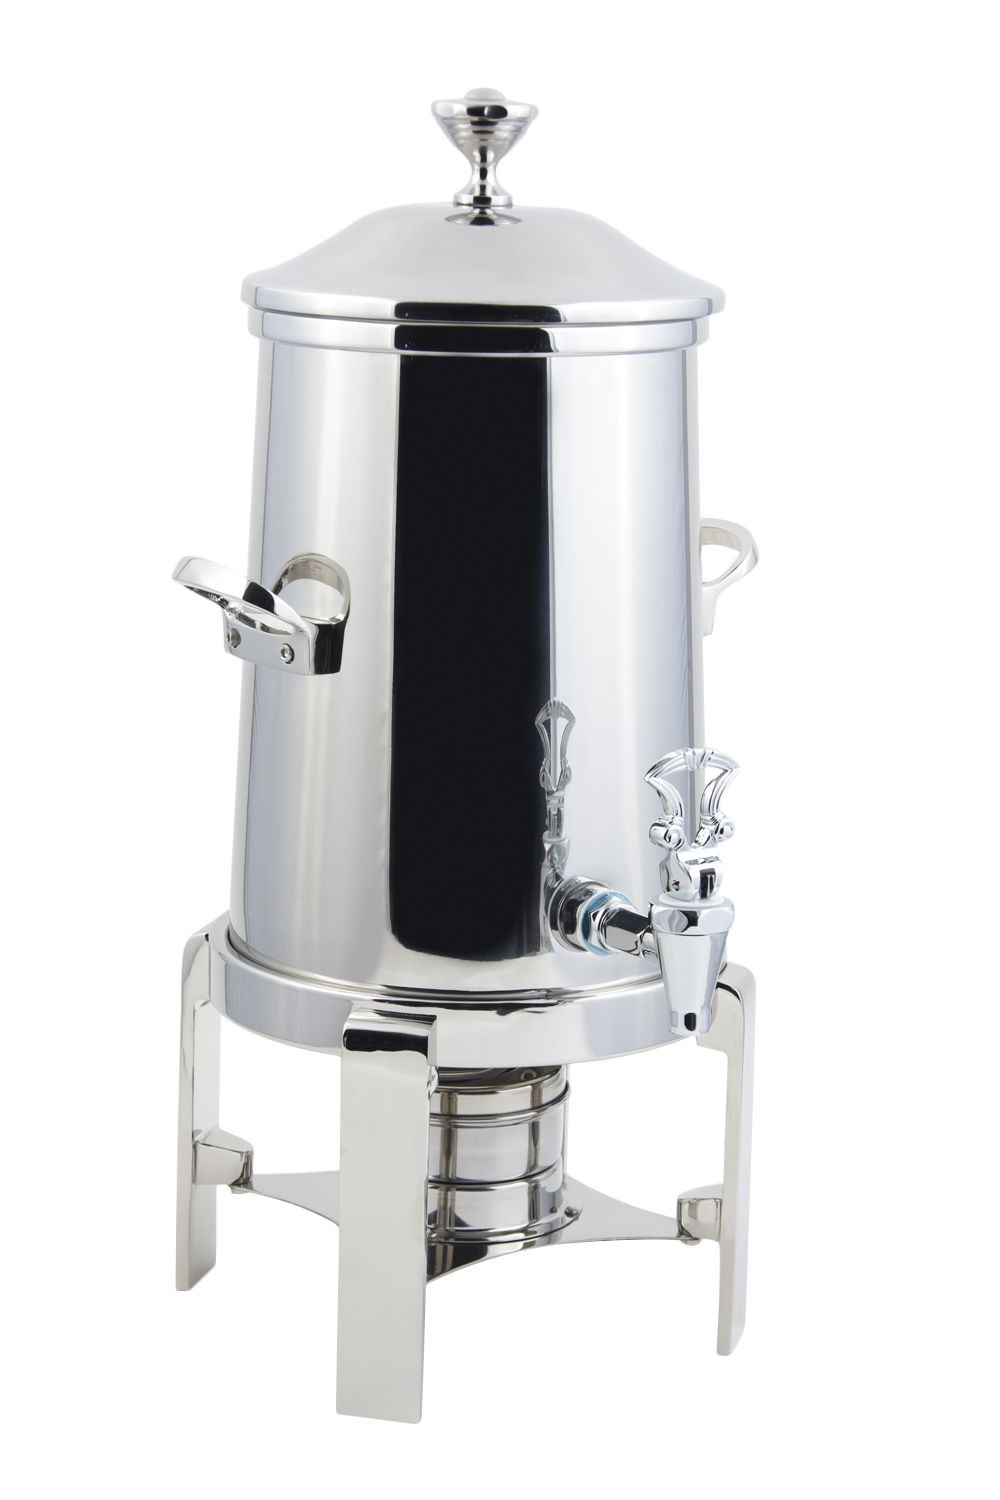 Bon Chef 42105C Contemporary Non-Insulated Coffee Urn with Chrome Trim, 5 Gallon